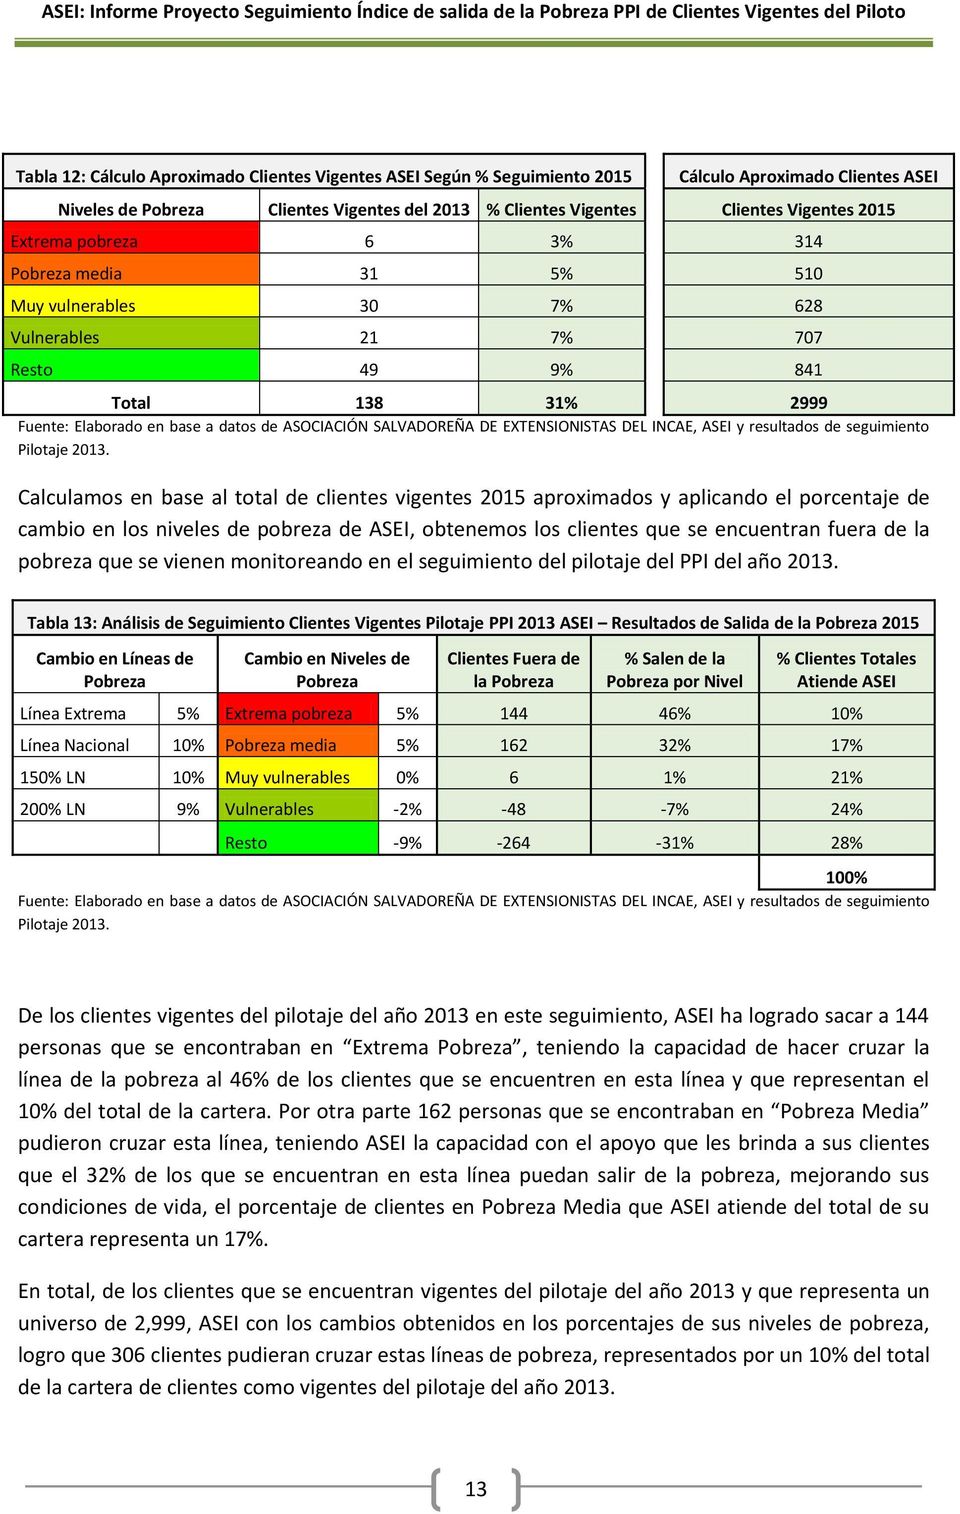 EXTENSIONISTAS DEL INCAE, ASEI y resultados de seguimiento Pilotaje 2013.